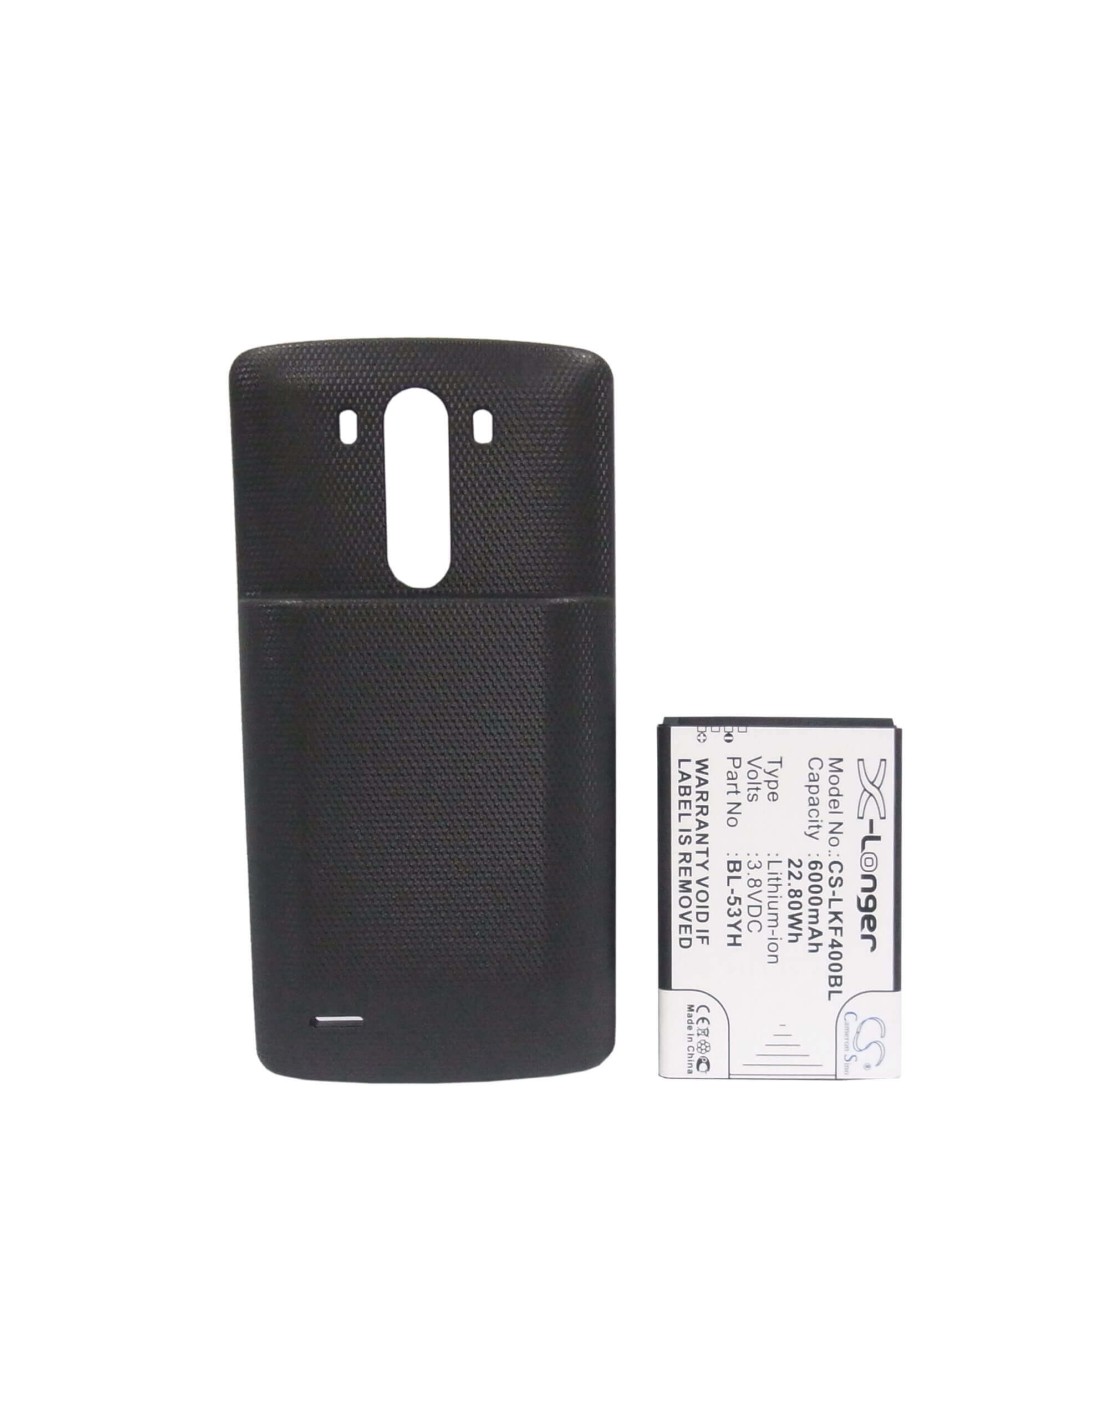 Battery for LG G3, D855, D855 LTE, black back cover 3.8V, 6000mAh - 22.80Wh